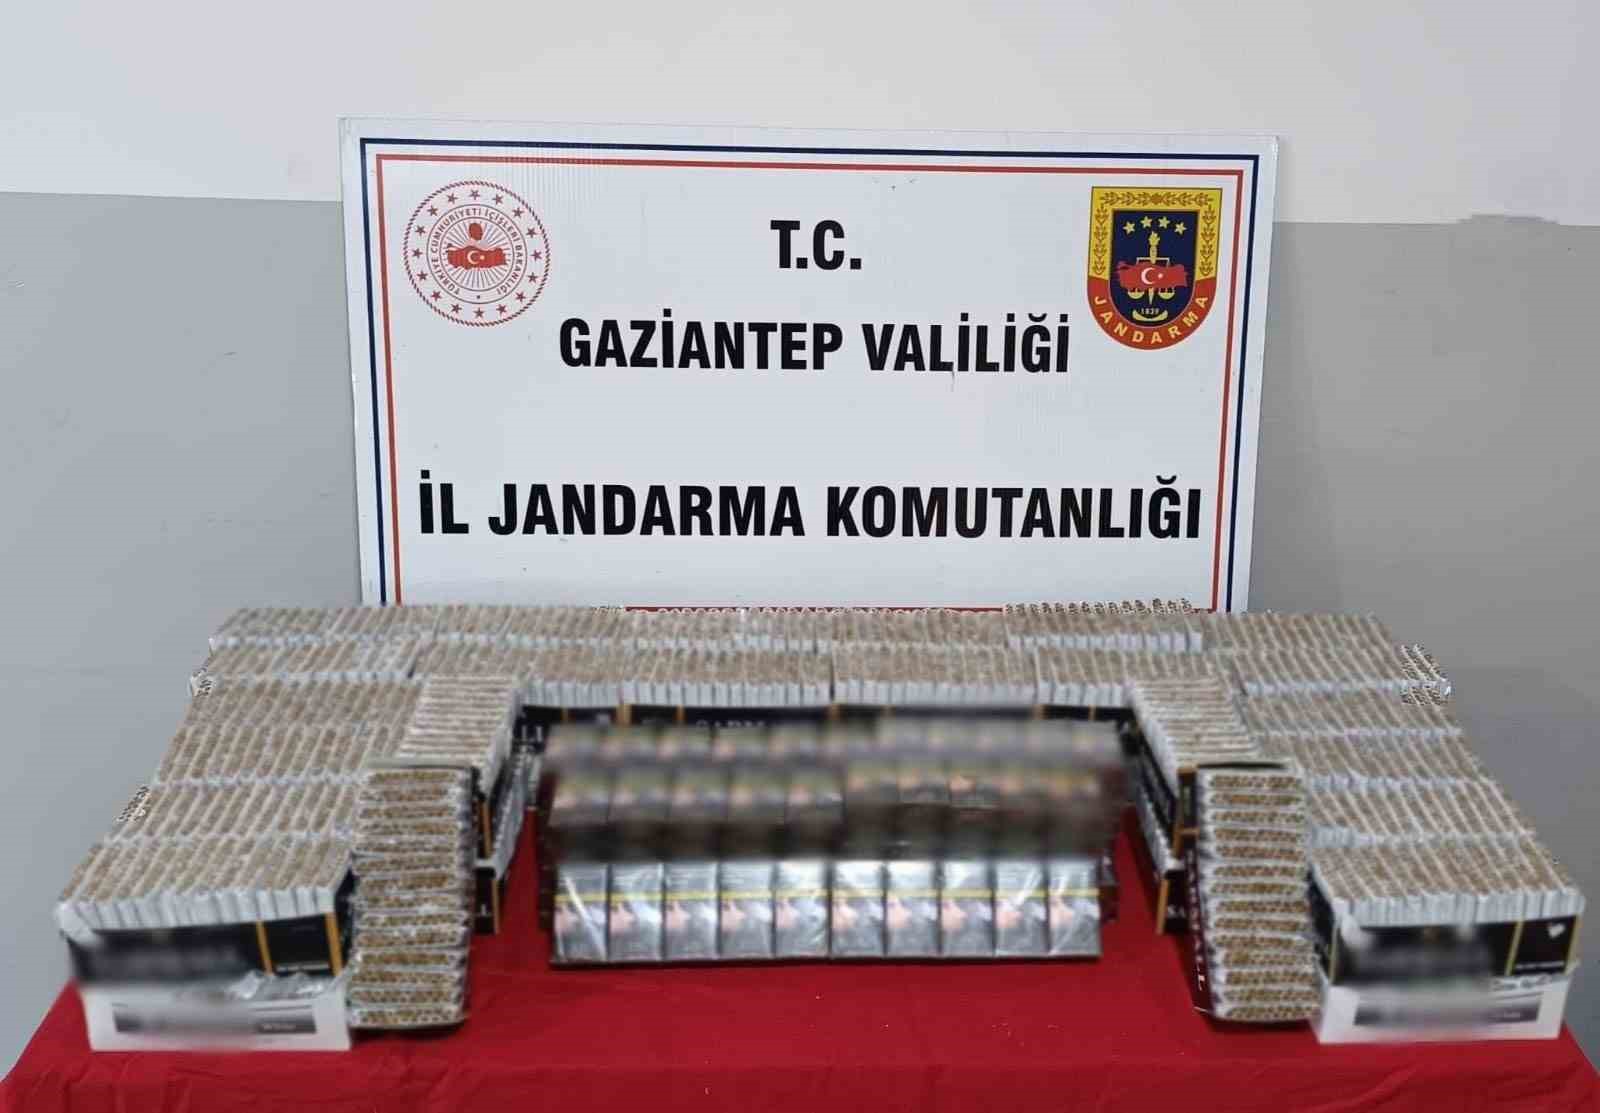 Gaziantep’te 1 milyon 317 bin liralık kaçak malzeme ele geçirildi: 6 gözaltı
